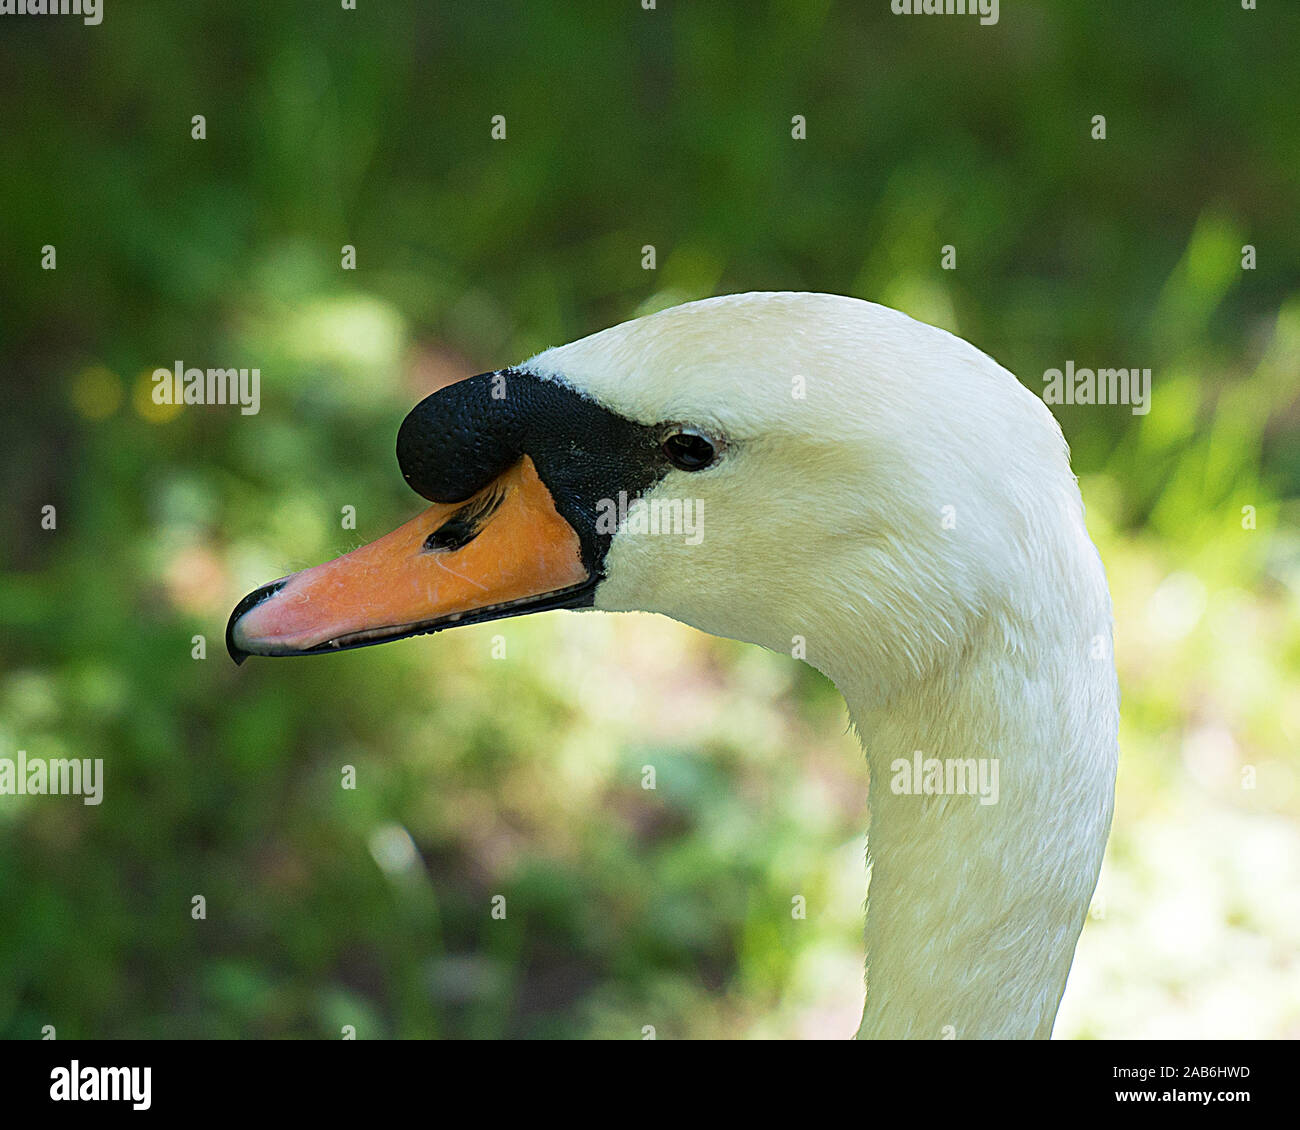 Il White Swan bird vista ravvicinata della sua testa, il becco, occhio, con uno sfondo bokeh di fondo Foto Stock